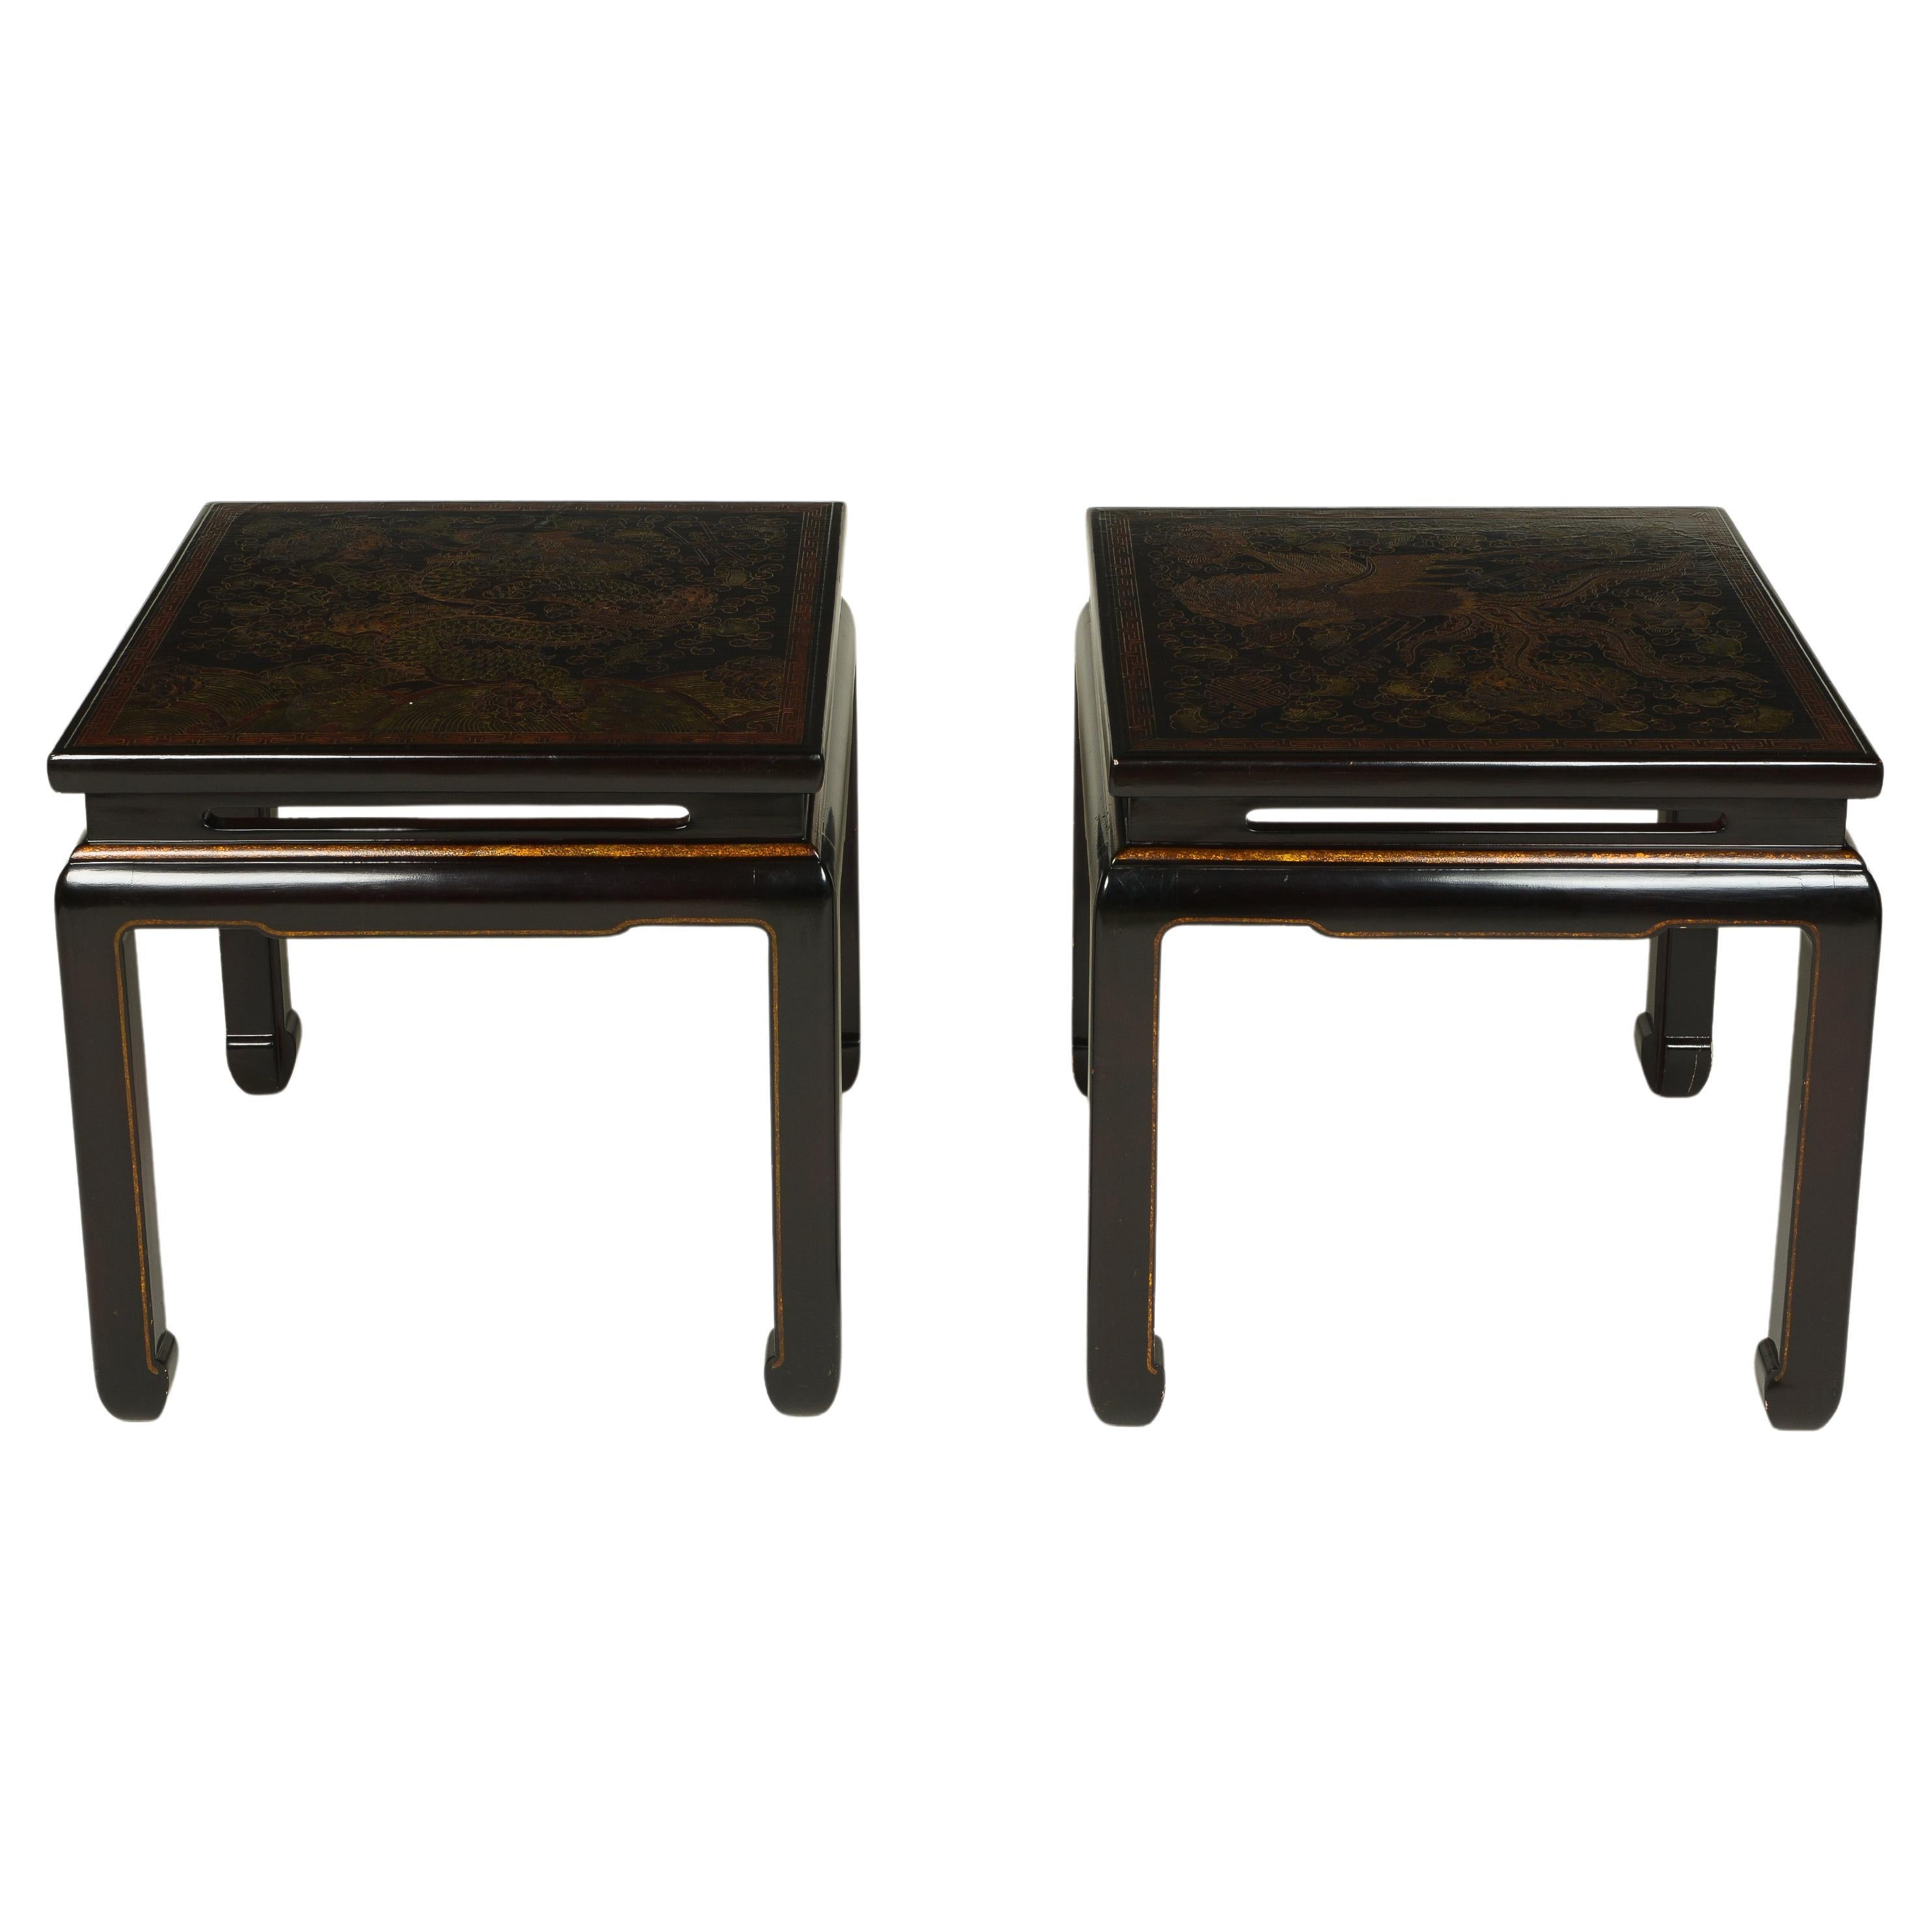 Paire de tables basses carrées en laque de Coromandel brun foncé de style Chinoiserie